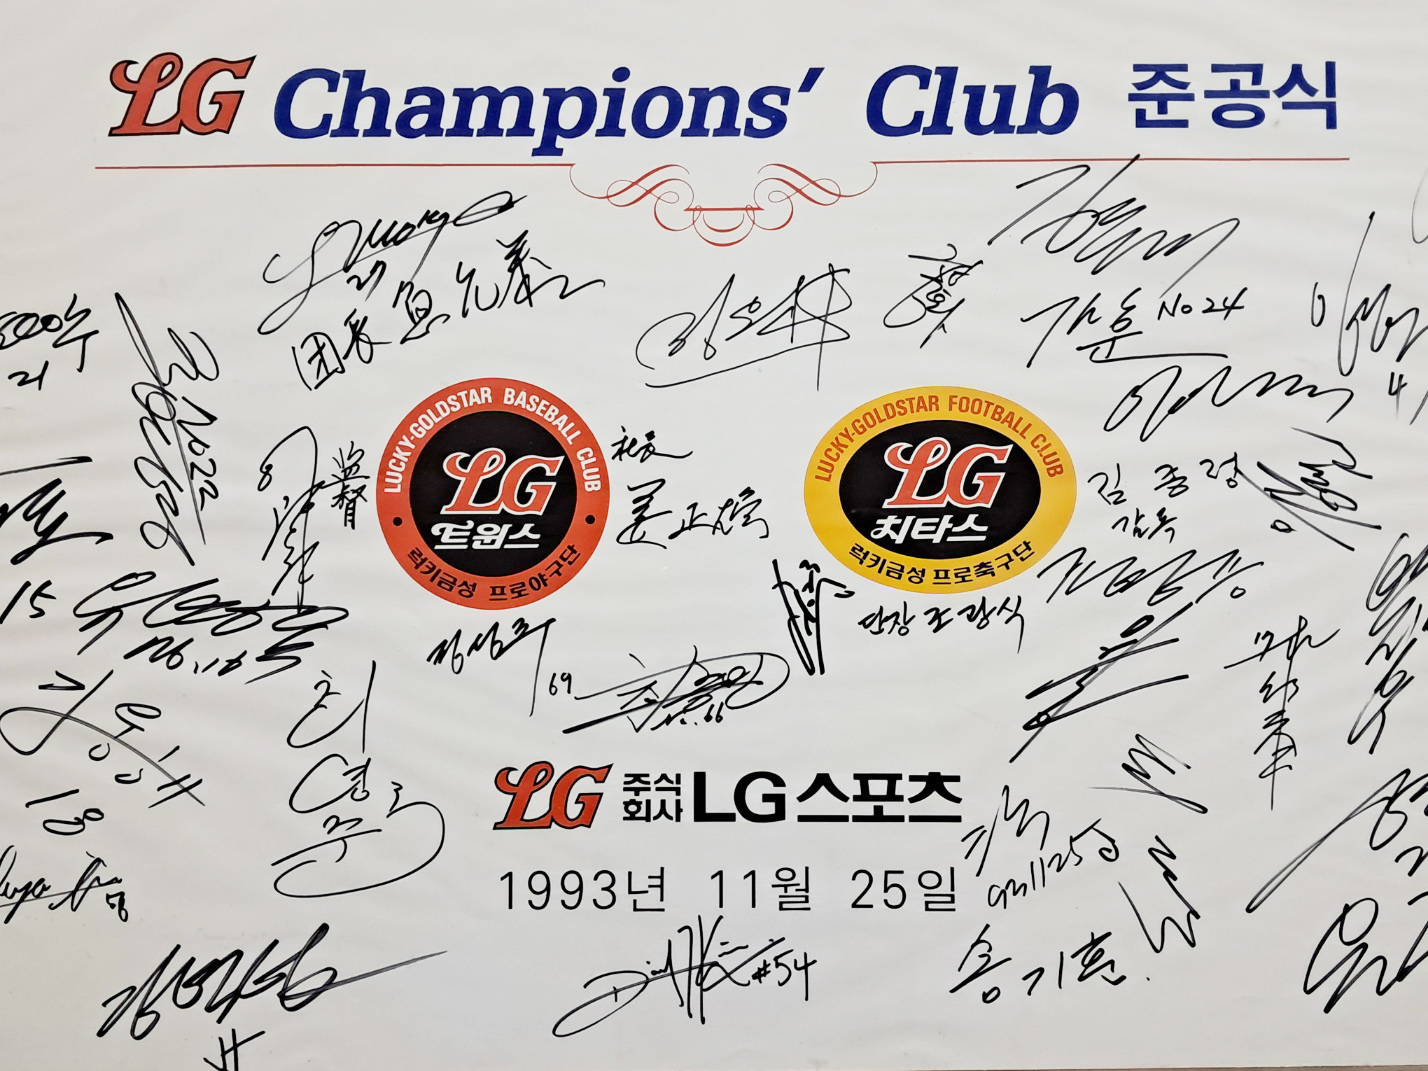 [342] [LG Champions' Club 준공식] 사인판